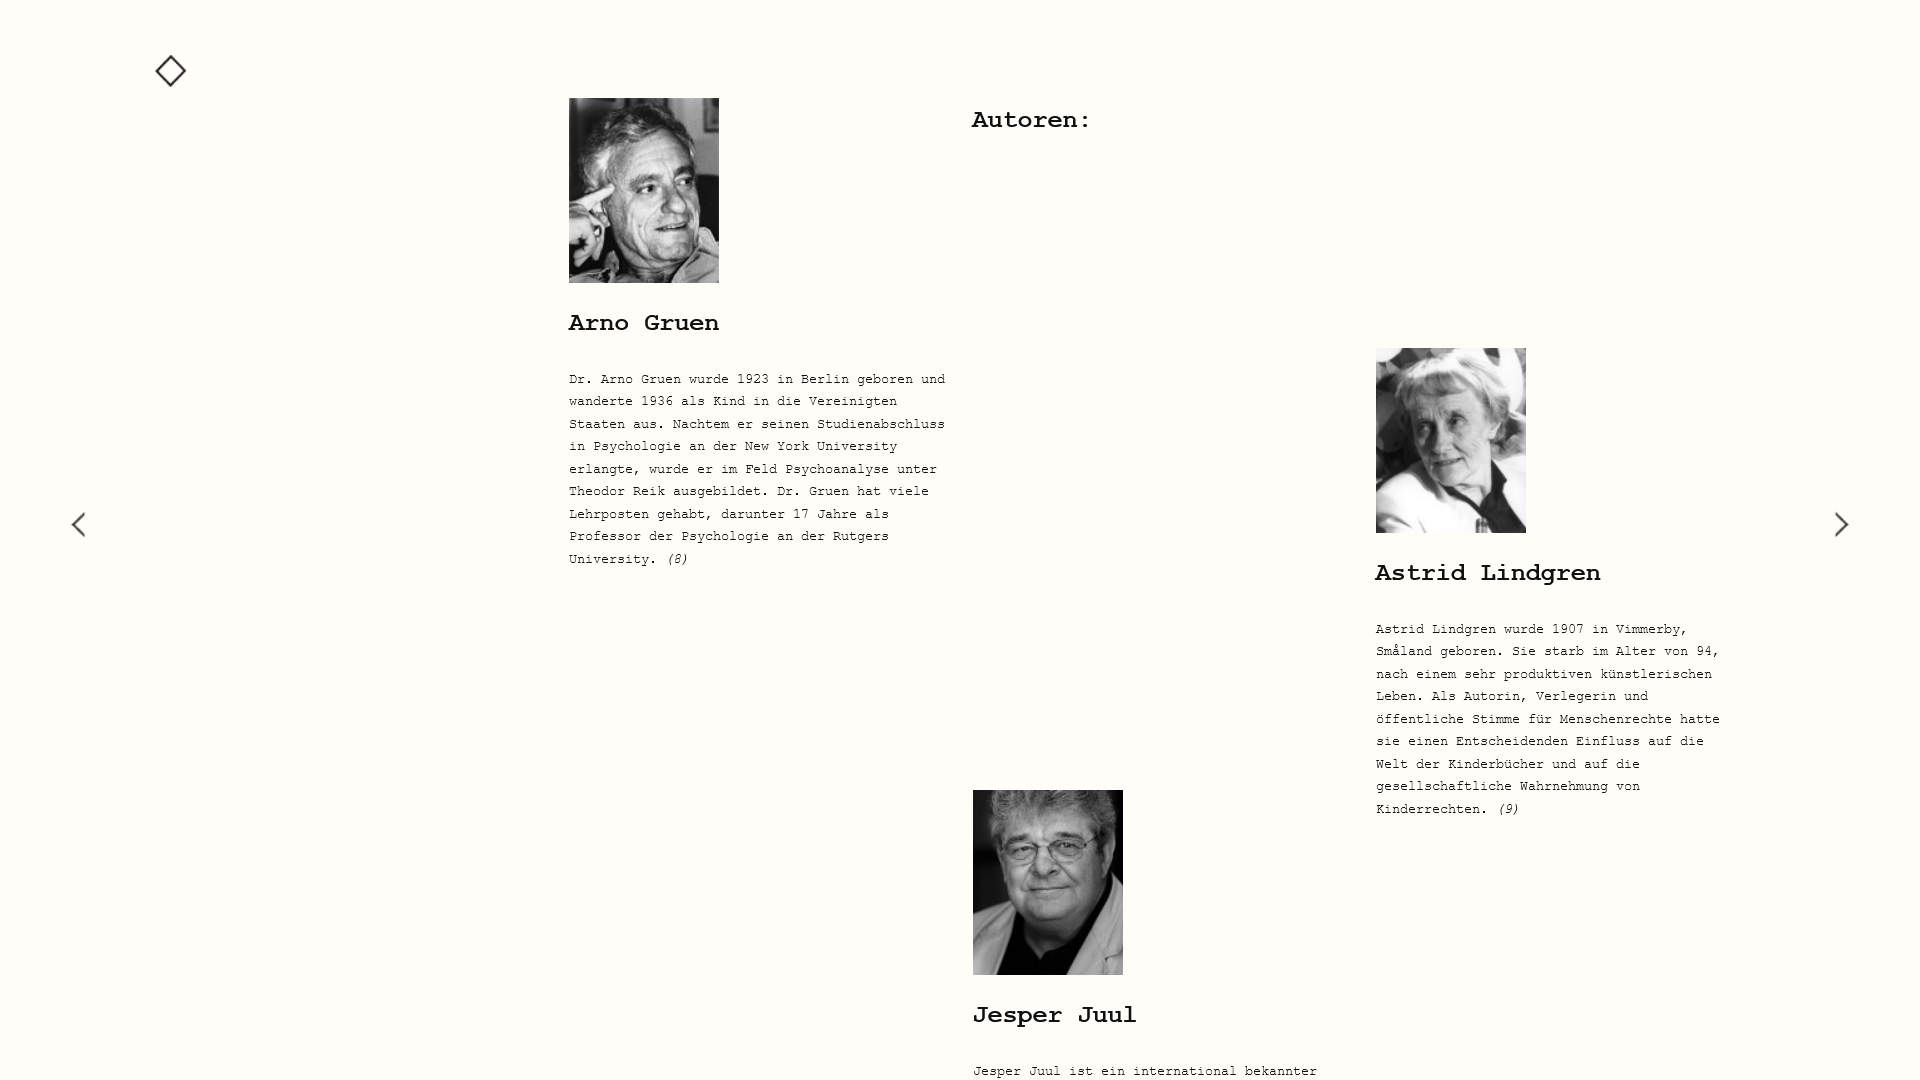 Screenshot: Drei Autore*innen vorgestellt: Arno Gruen, Astrid Lindgren und Jesper Juul